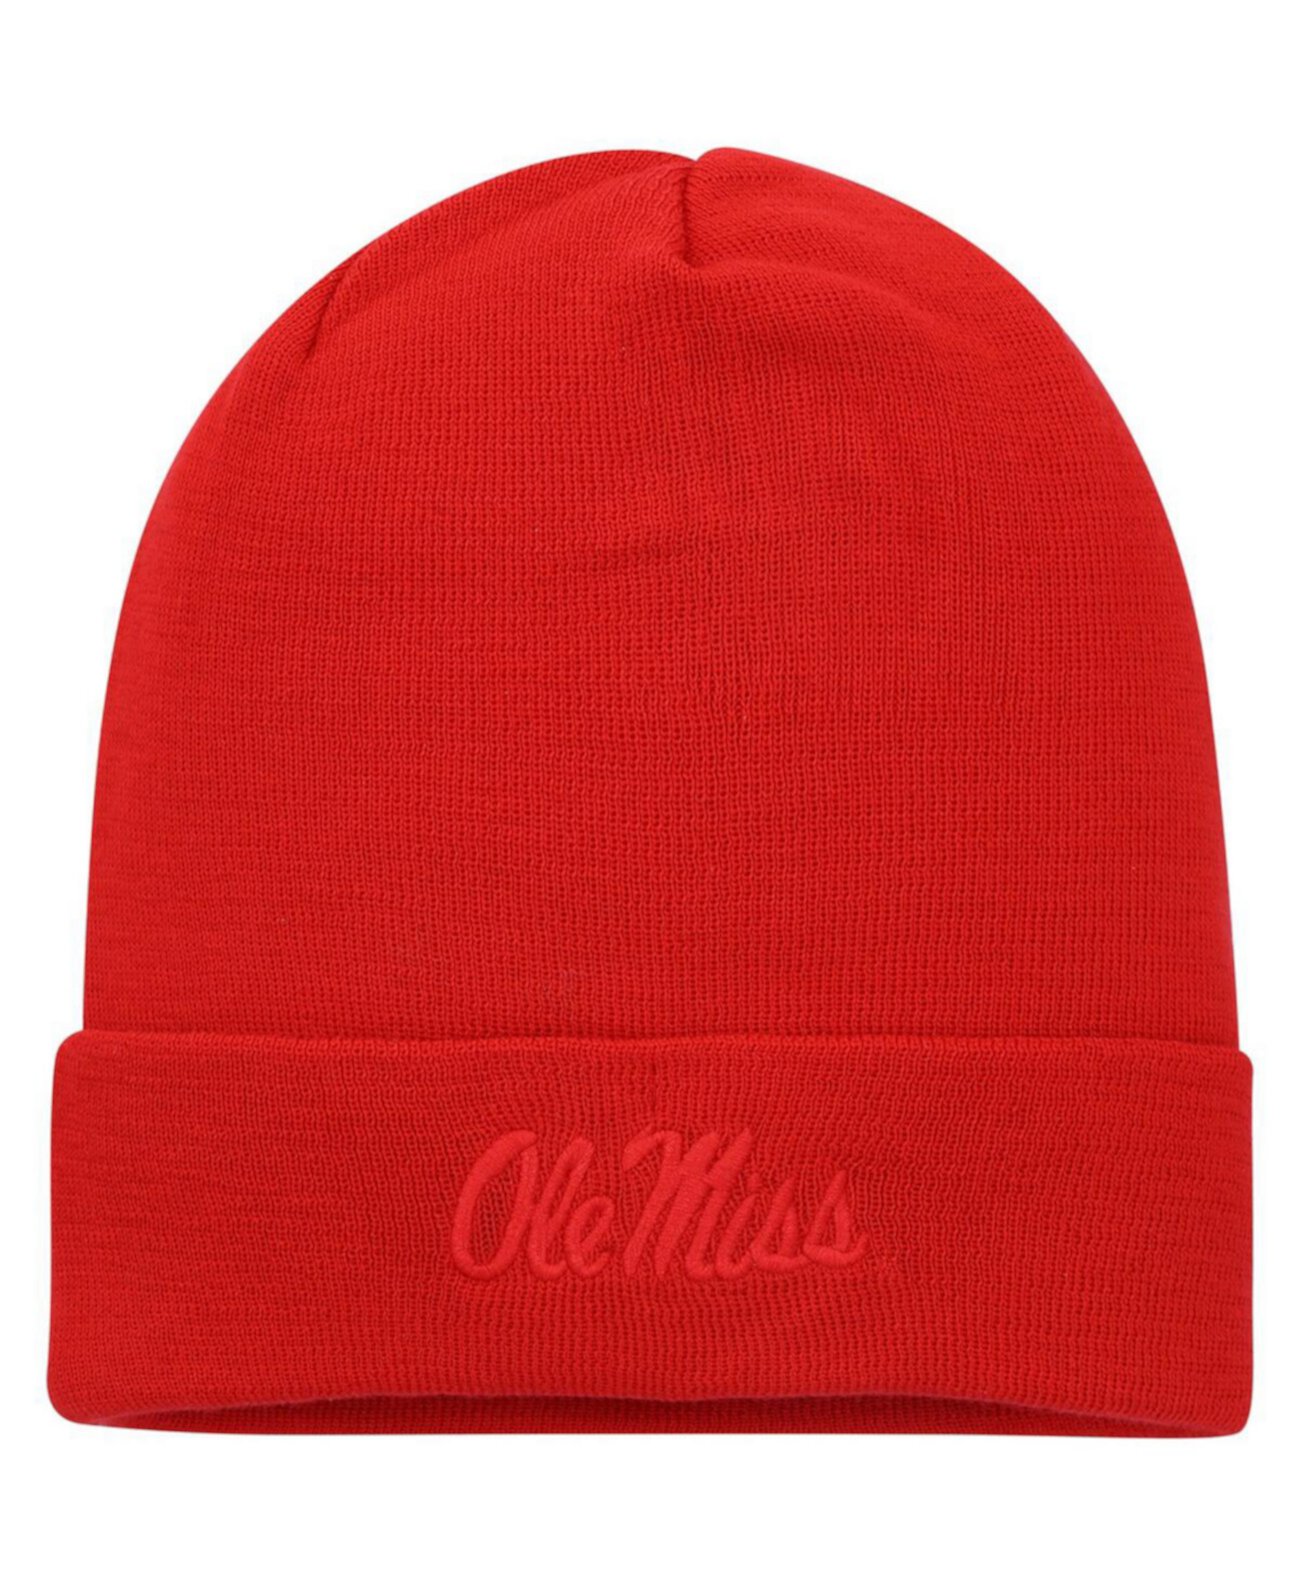 Мужская красная вязаная шапка в тон Ole Miss Rebels с манжетами Nike